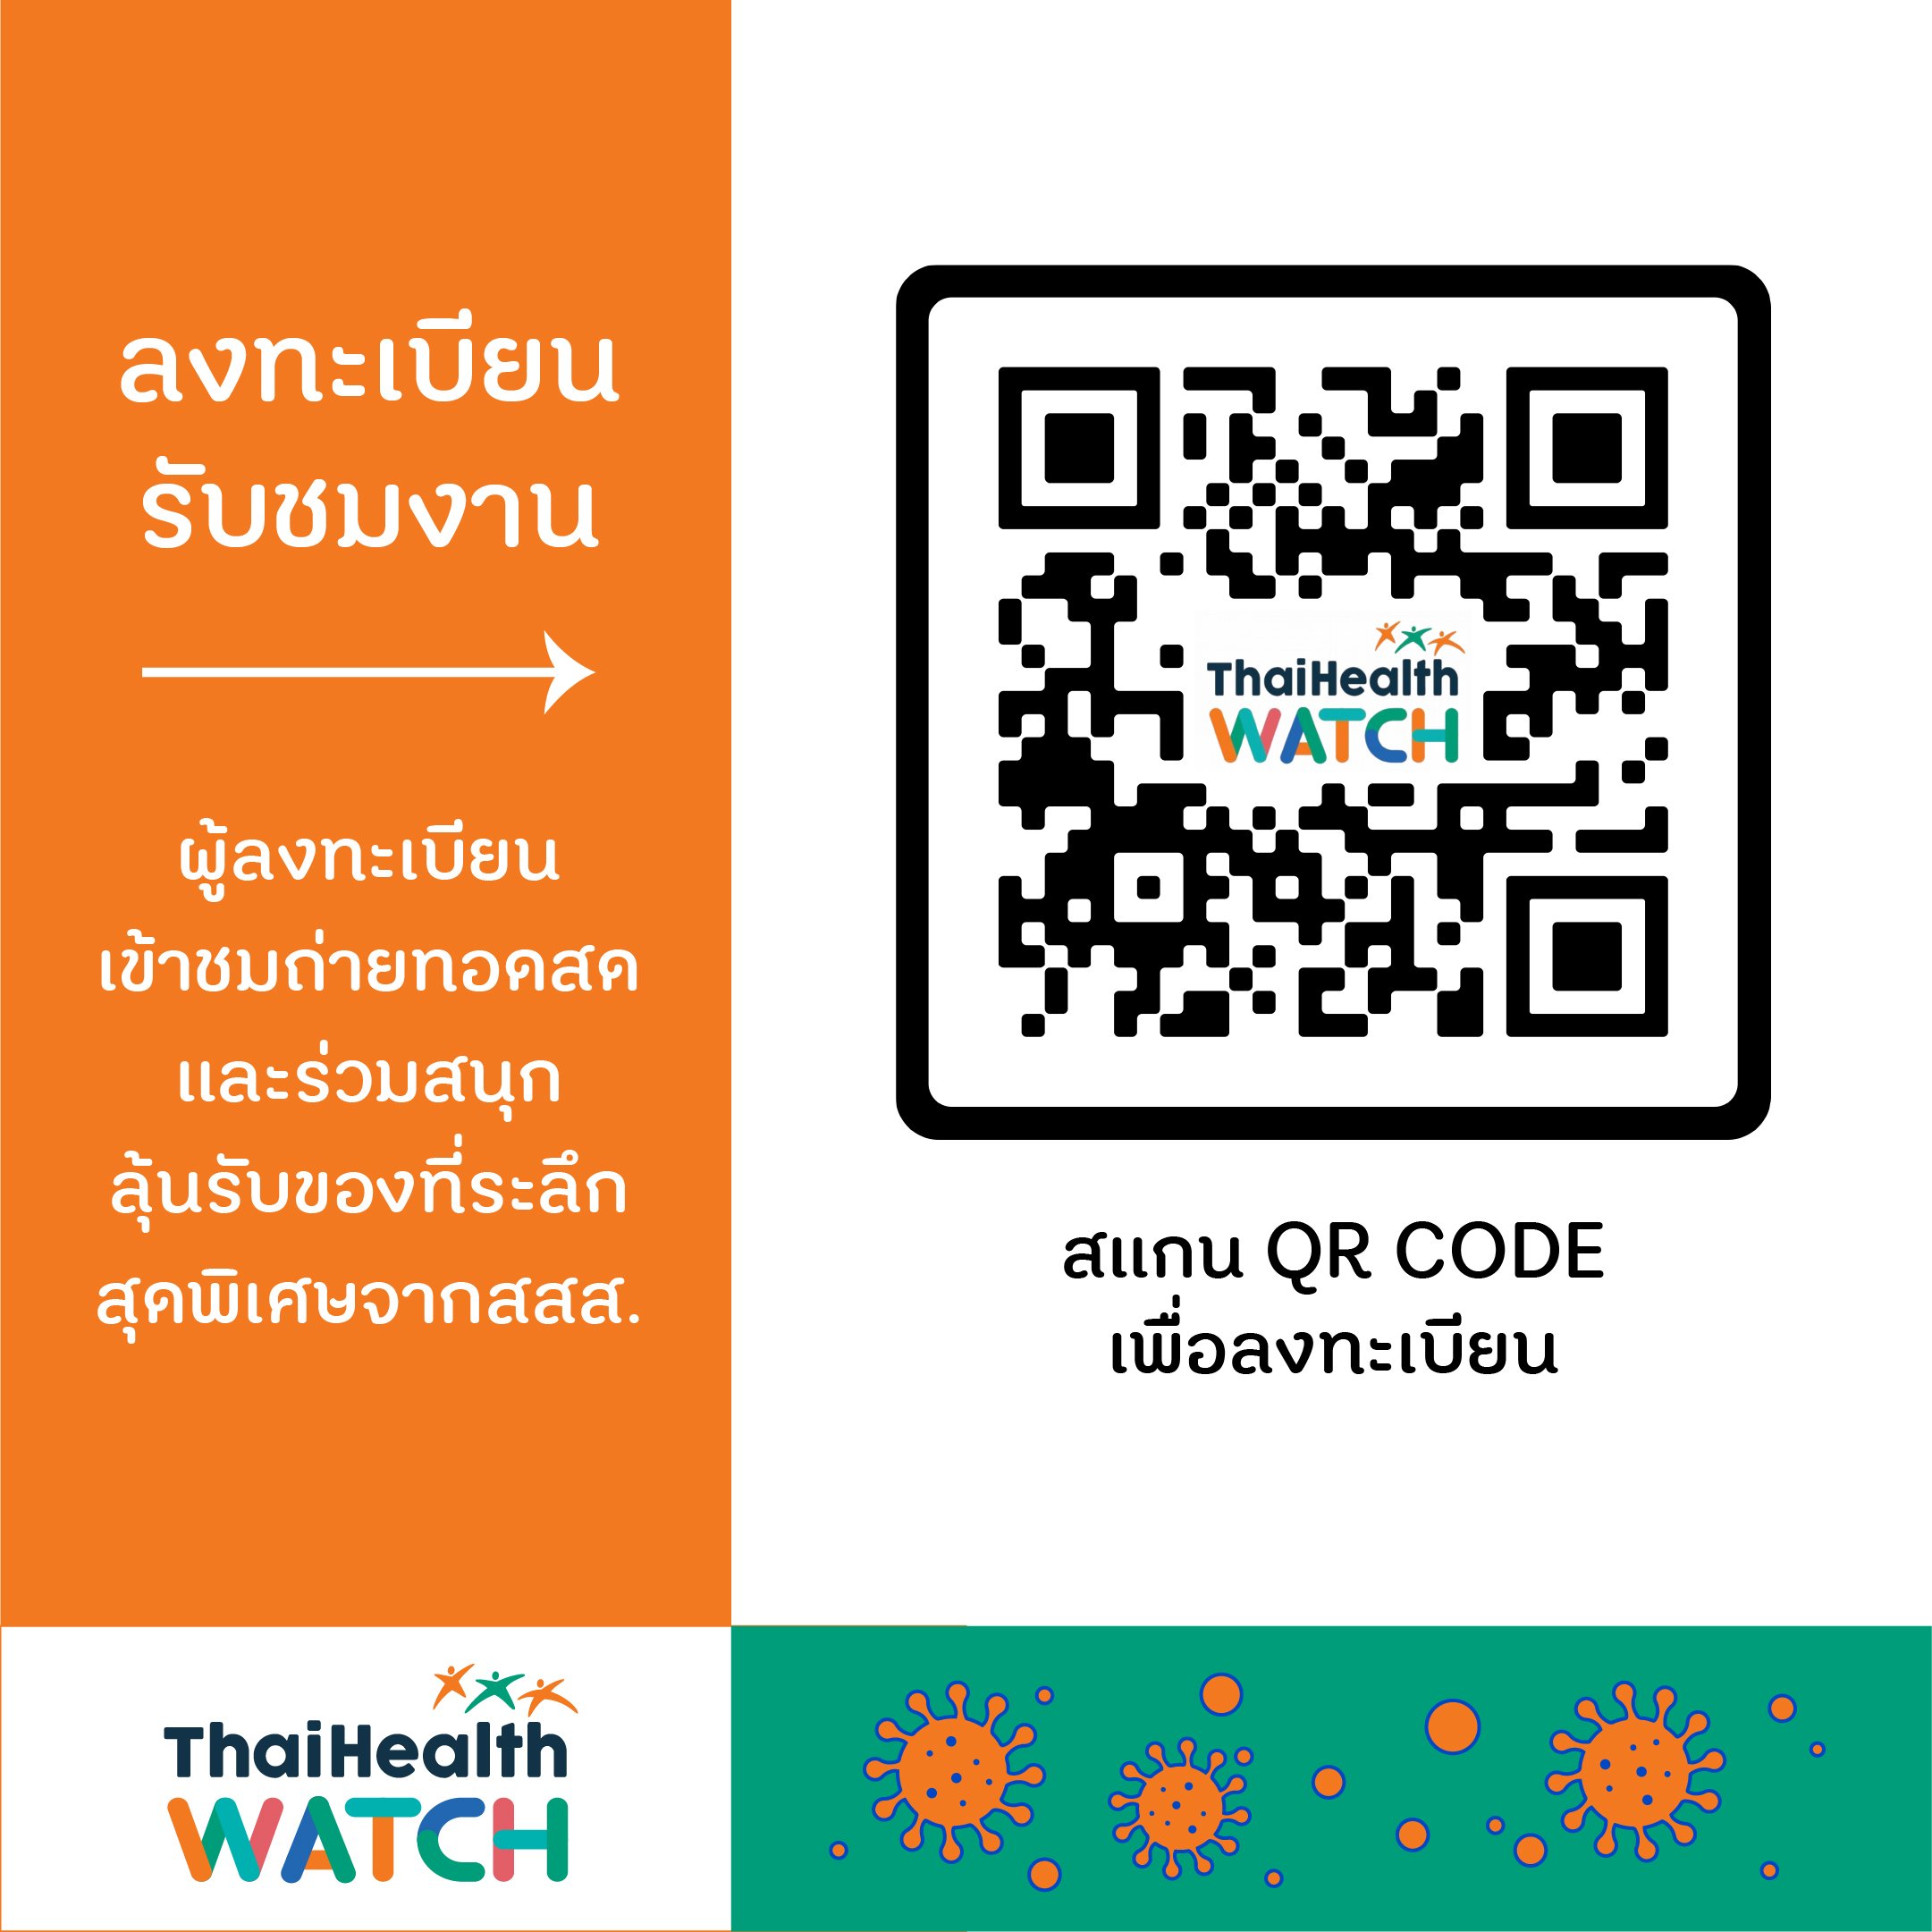 สสส.ชวนประชาชนร่วมจับตาทิศทางสุขภาพคนไทย ปี 2564  thaihealth